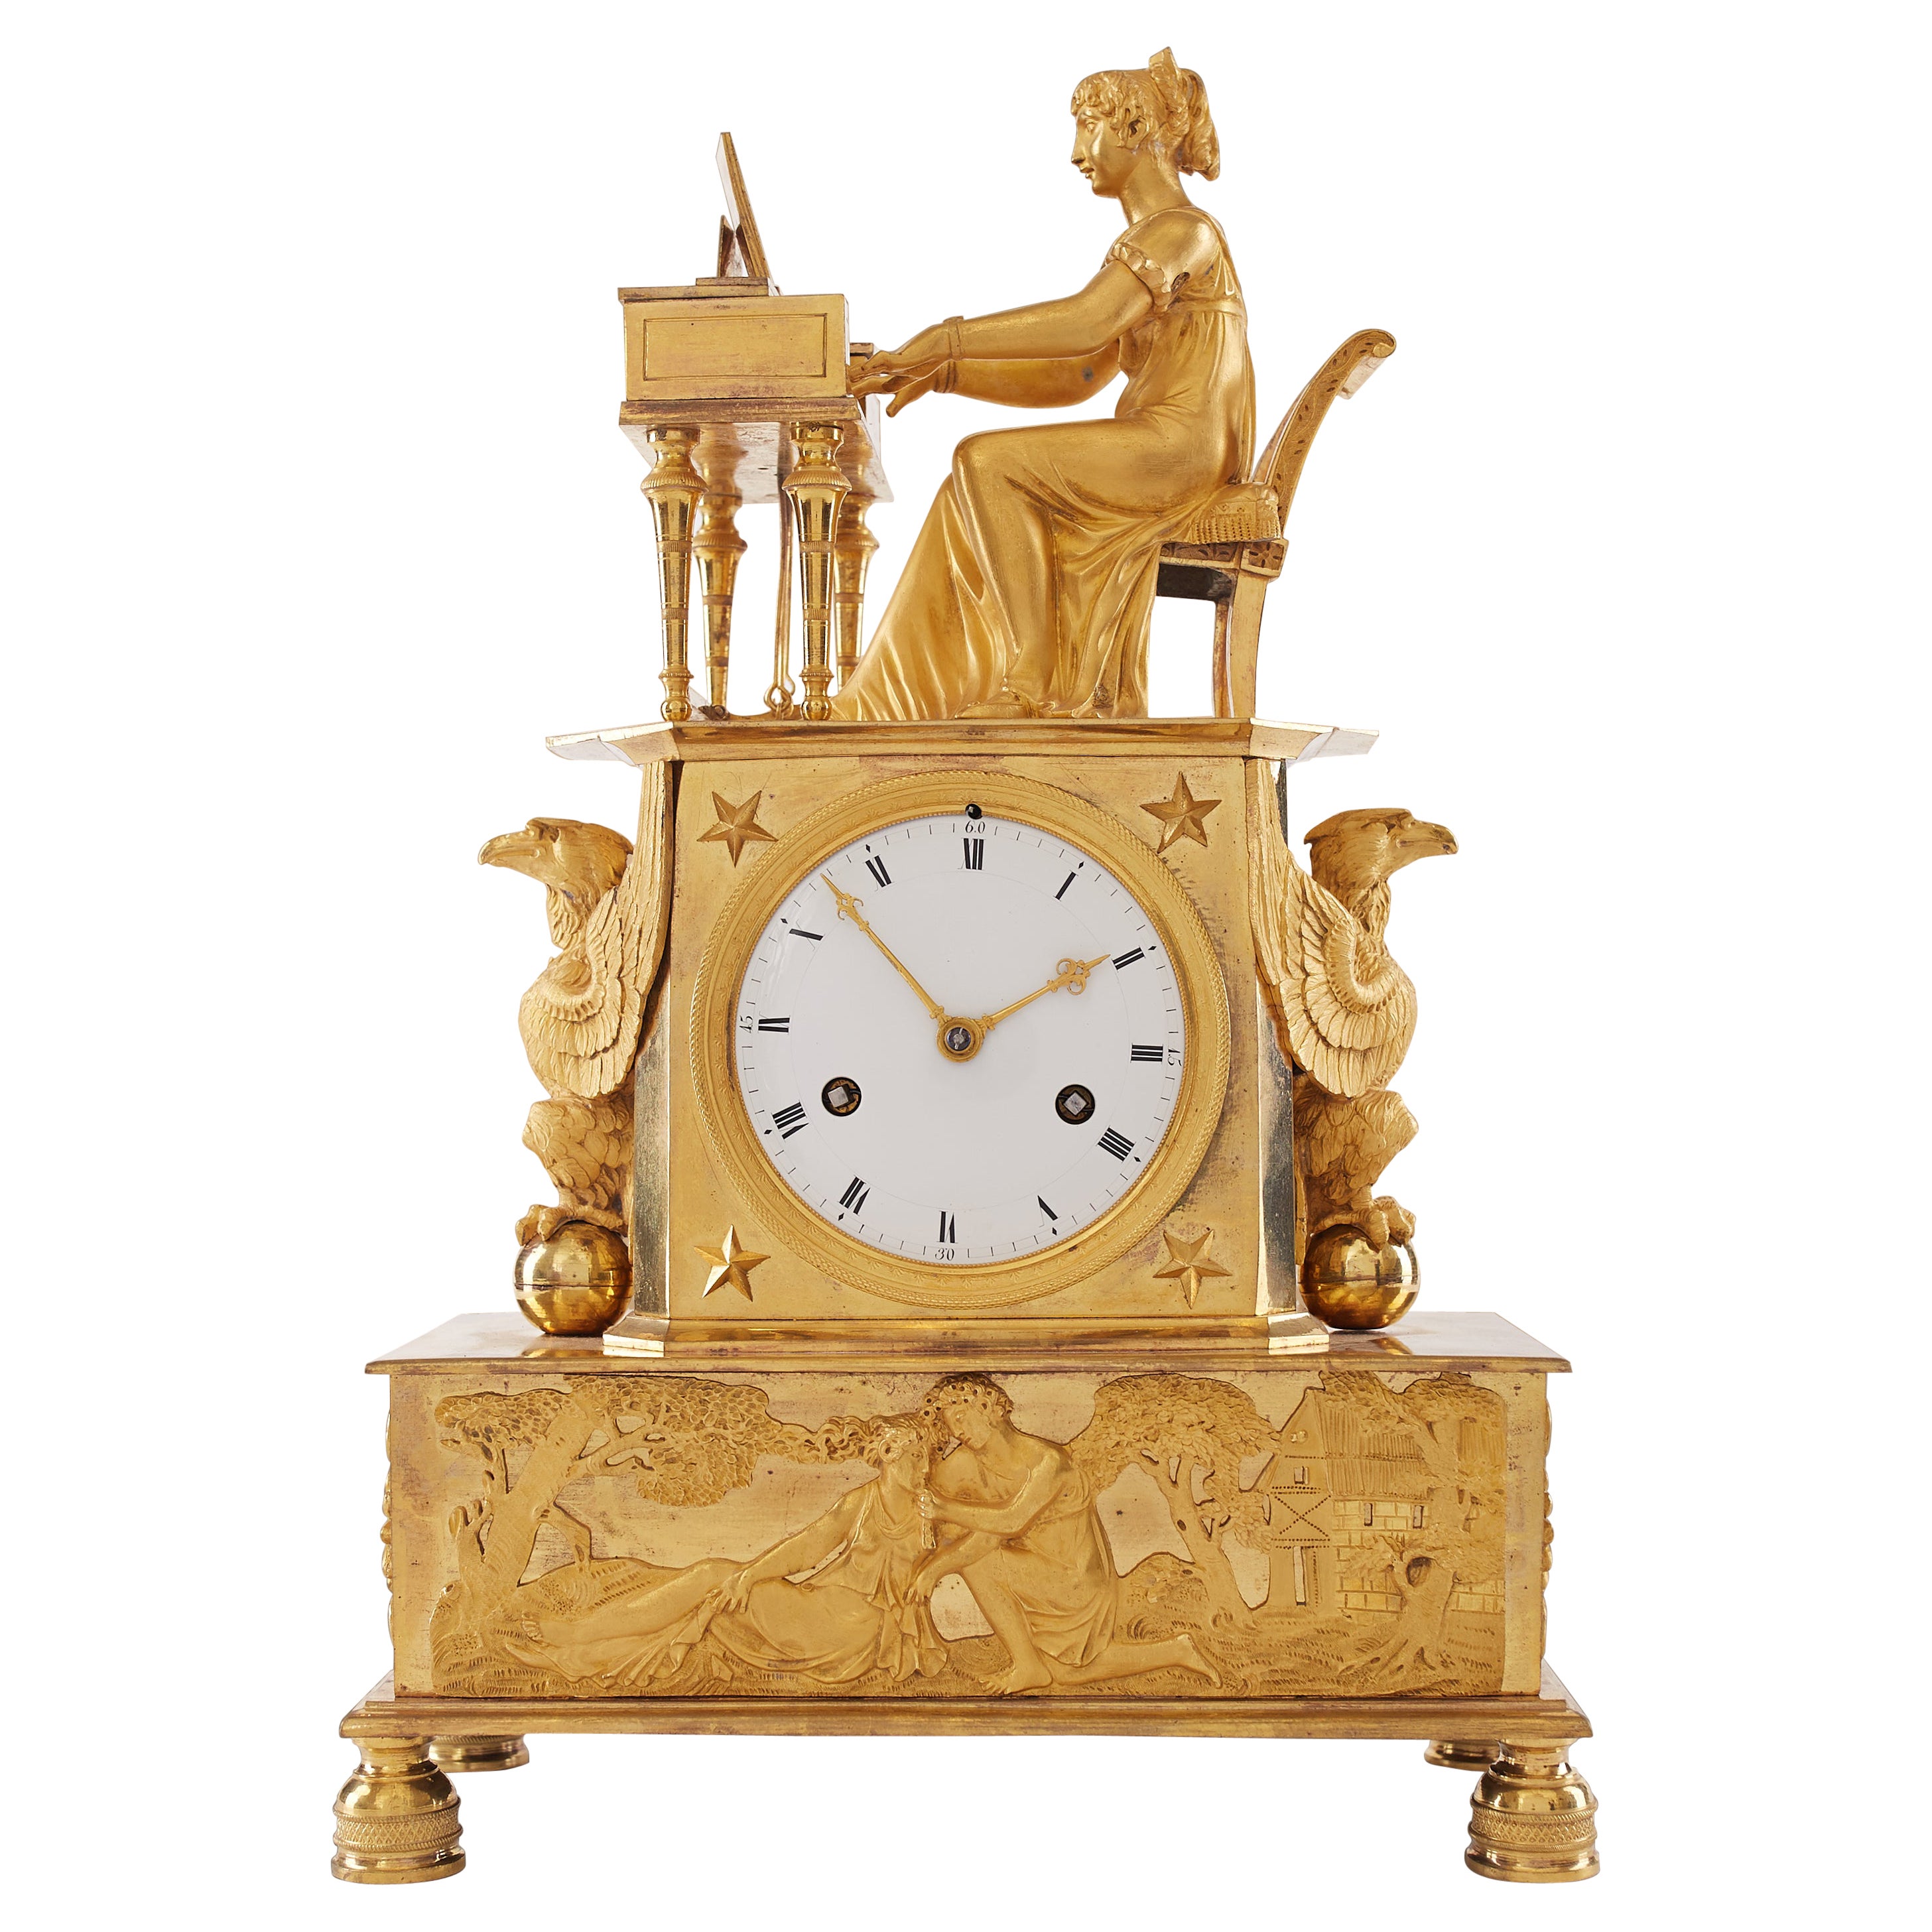 Ungewöhnliche Goldbronze-Uhr im Empire-Stil aus dem 19. Jahrhundert